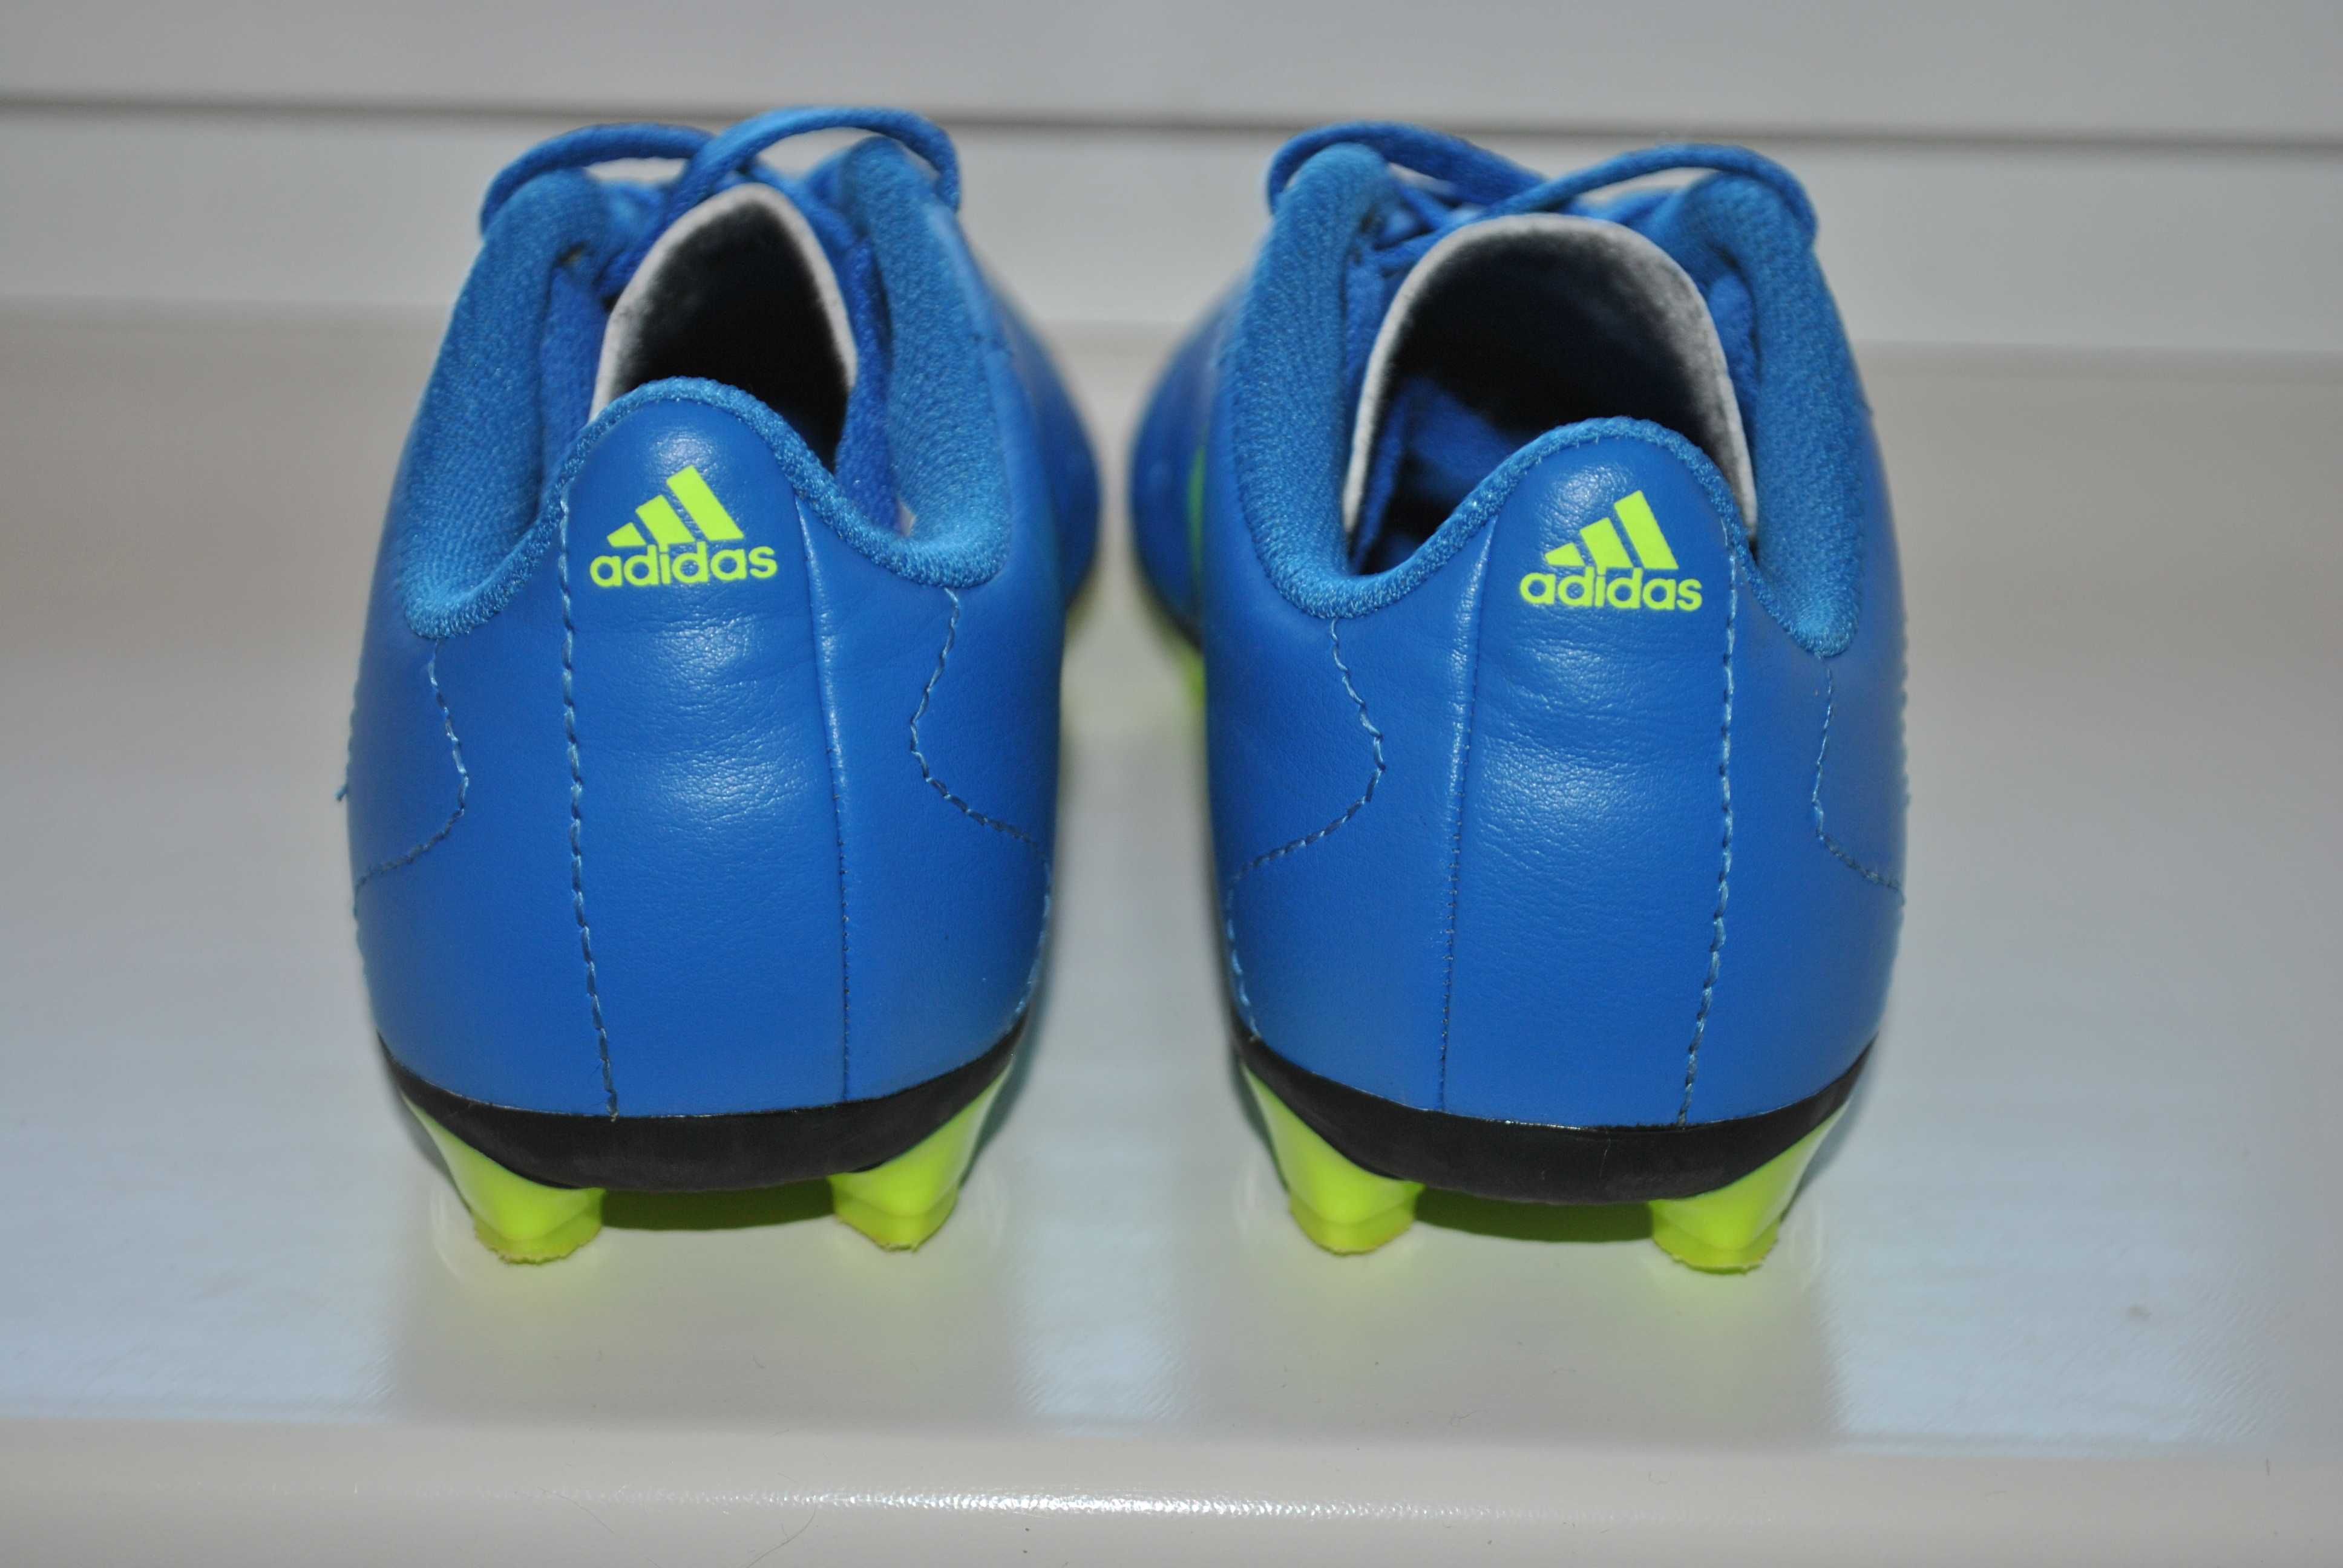 Футбольные бутсы Adidas р. 30,5 (19,3 см)